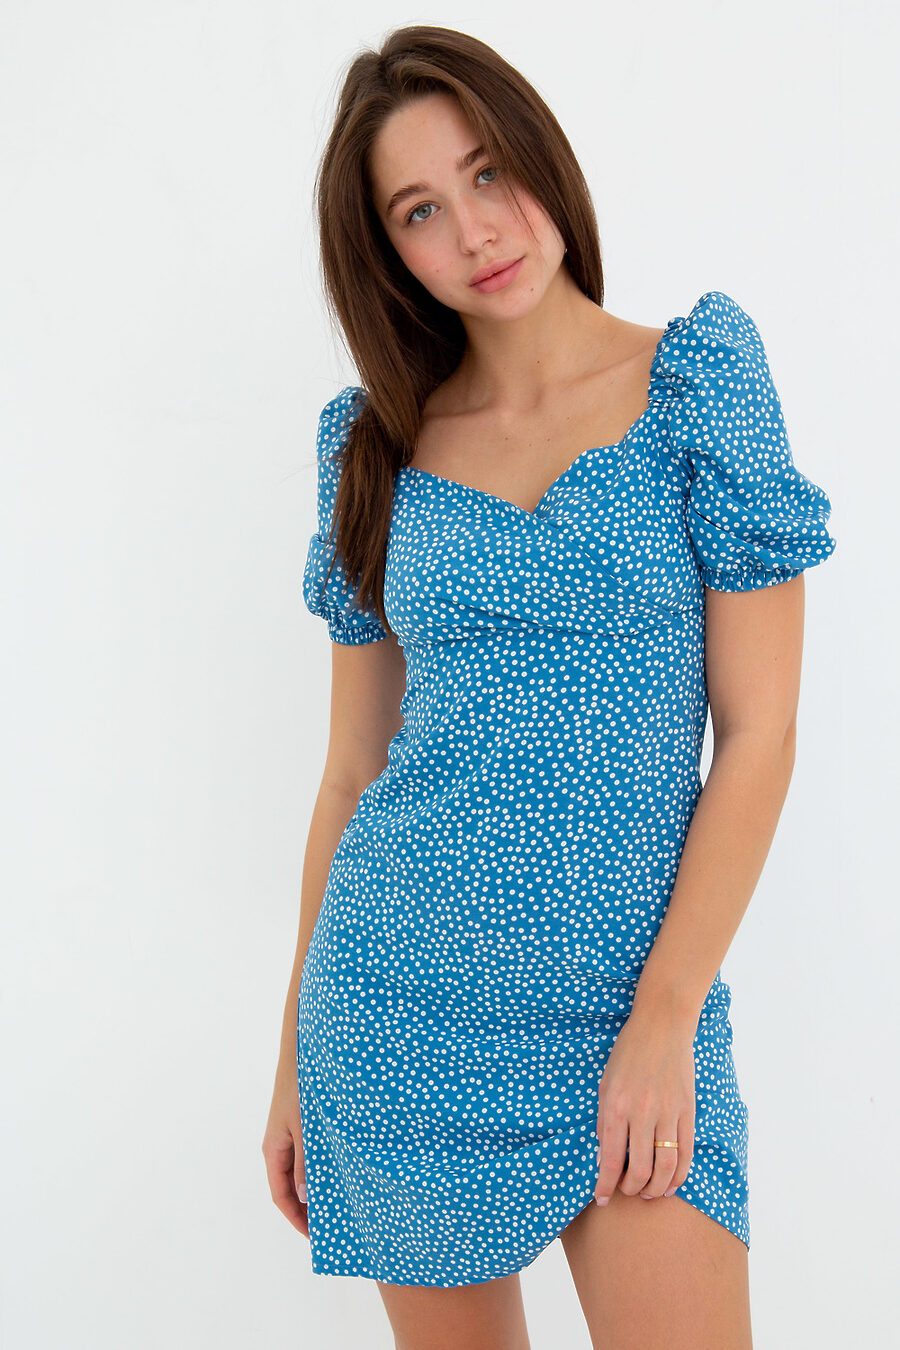 Платье П-19 для женщин НАТАЛИ 775459 купить оптом от производителя. Совместная покупка женской одежды в OptMoyo